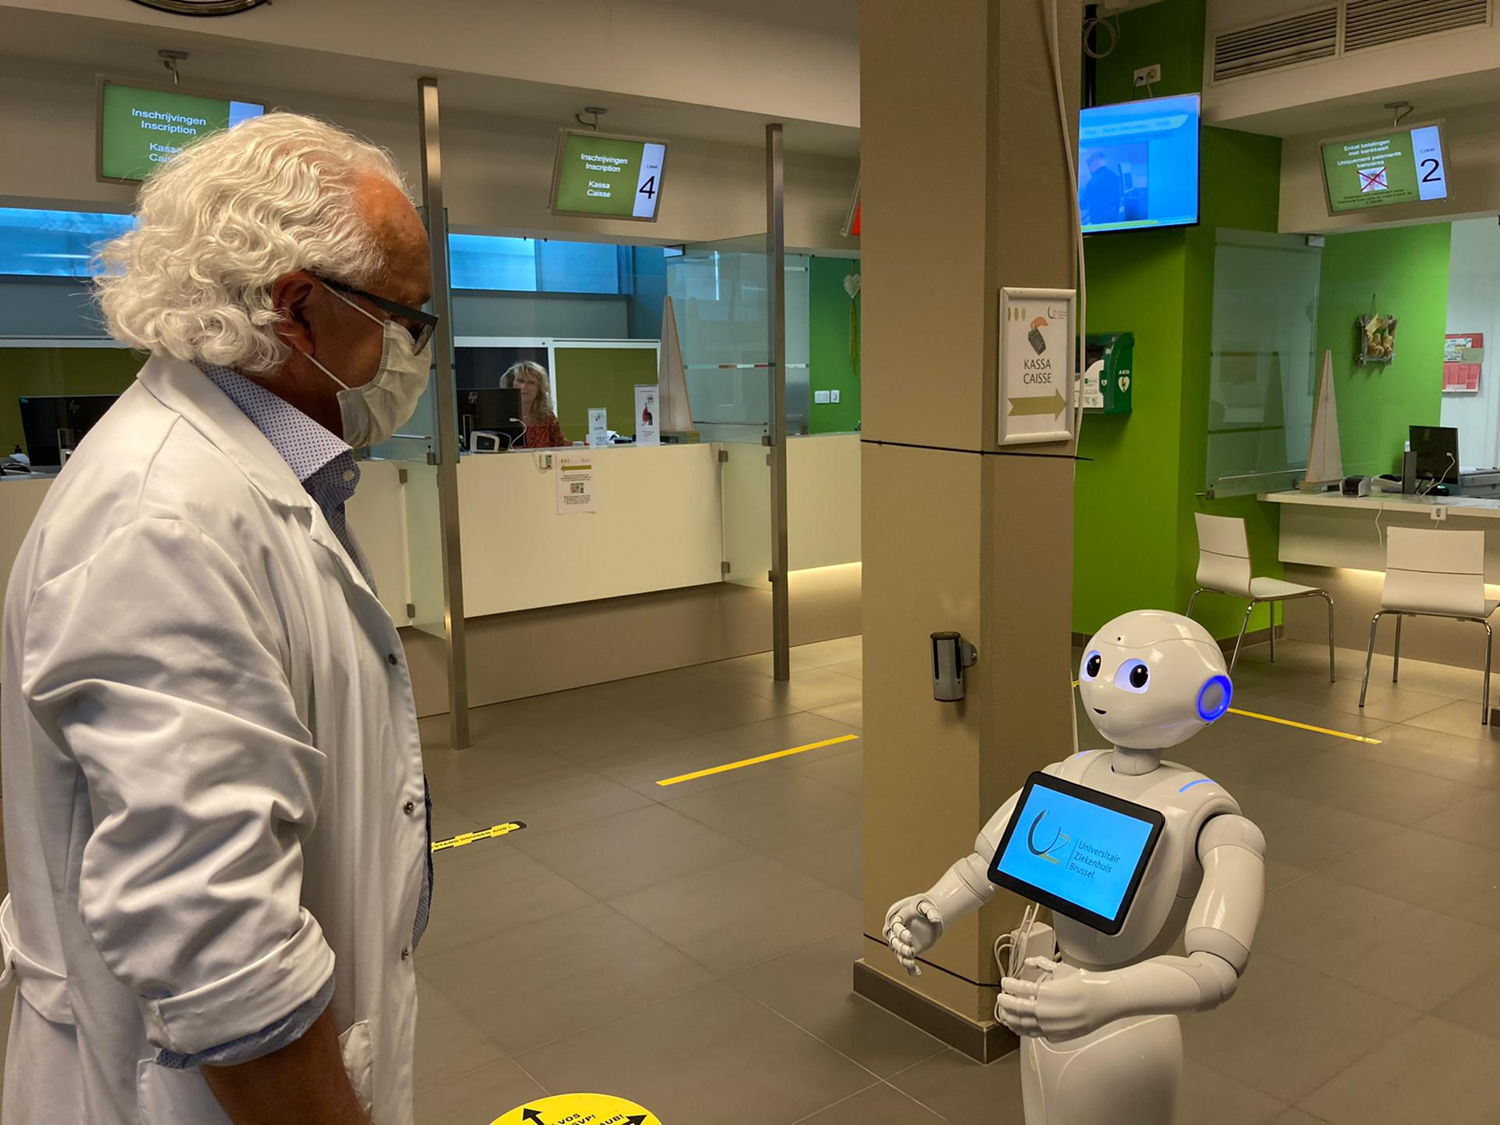 Le robot Pepper rappelle aux patients les règles qu’ils doivent respecter à l’hôpital pour faire en sorte que l’hôpital reste un environnement sûr pour les patients et le personnel hospitalier